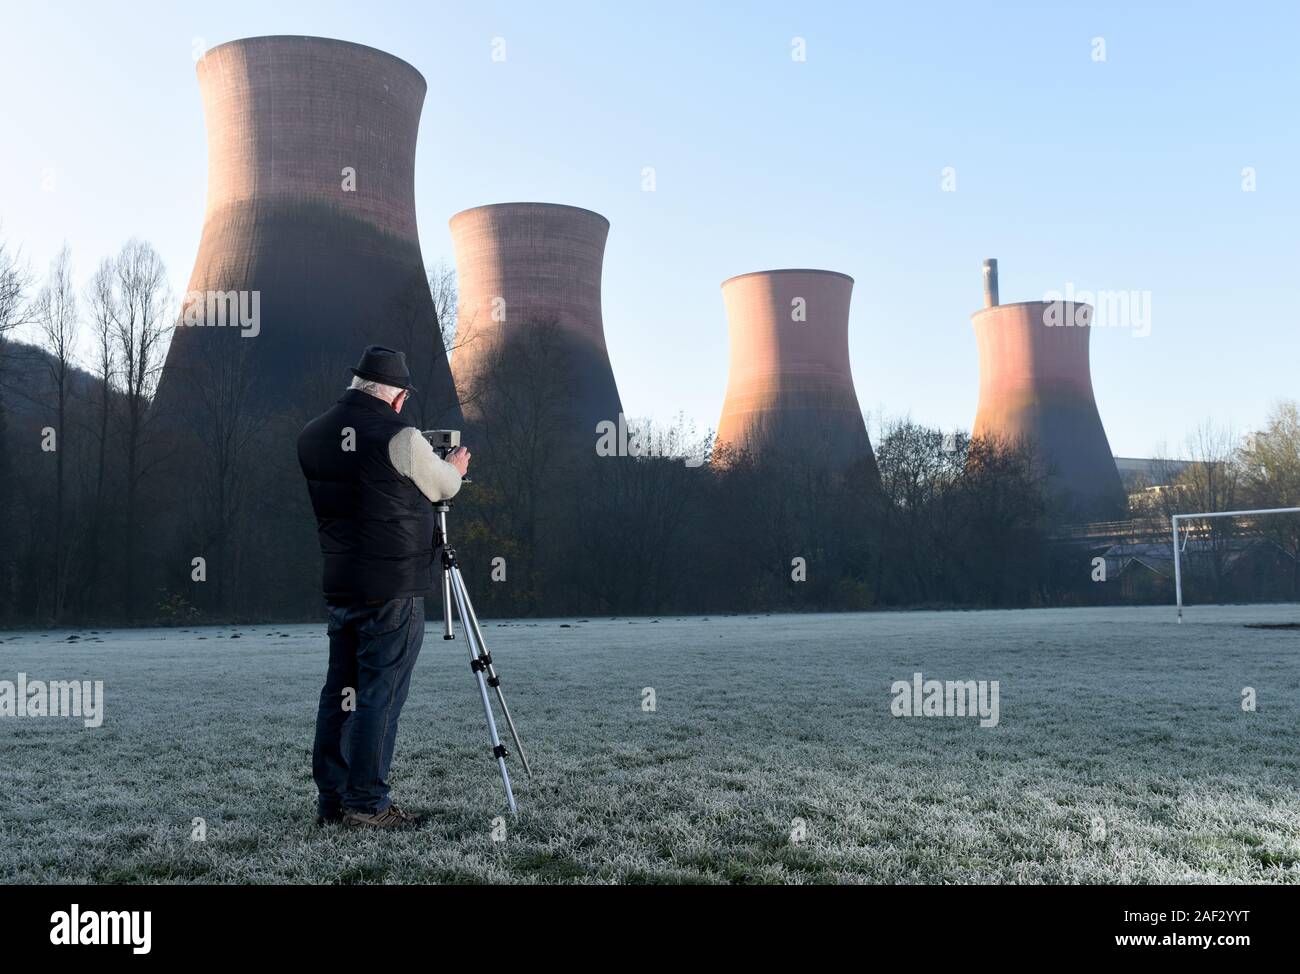 Landschaft Fotografen mit großformatigen Linhof Kamera auf einem Stativ. Bild von David Bagnall, Stockfoto